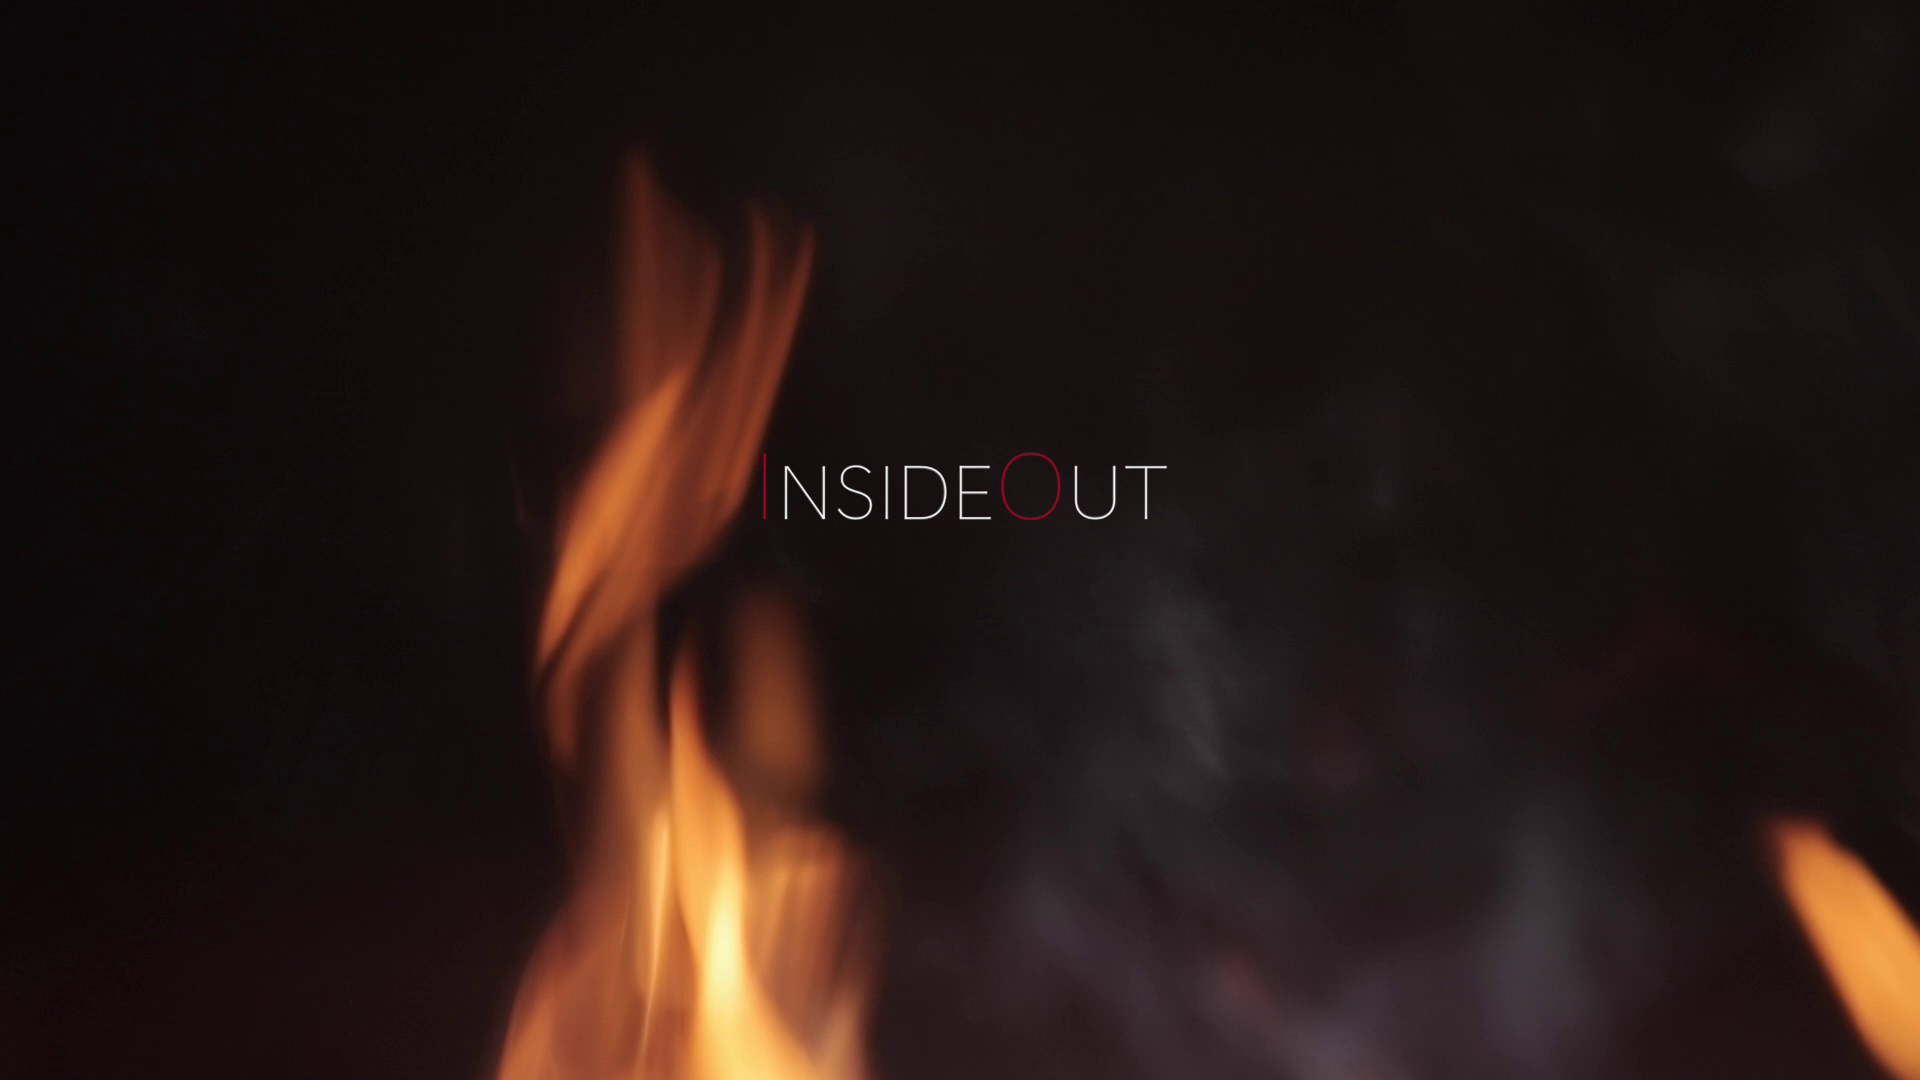 insideout esce fra le fiamme del camino su sfondo nero